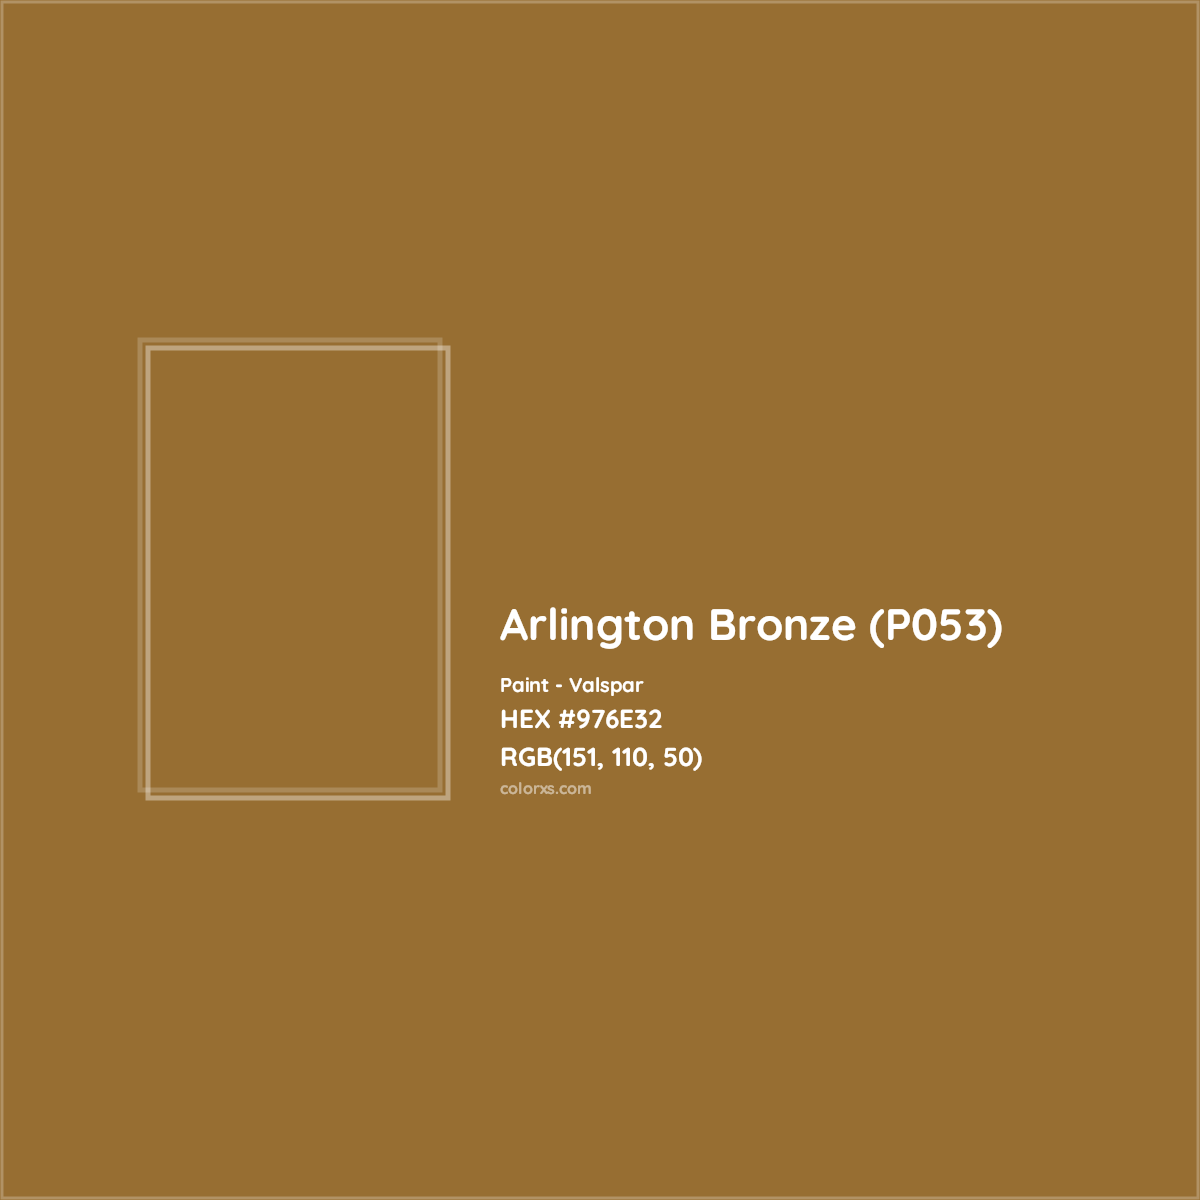 HEX #976E32 Arlington Bronze (P053) Paint Valspar - Color Code